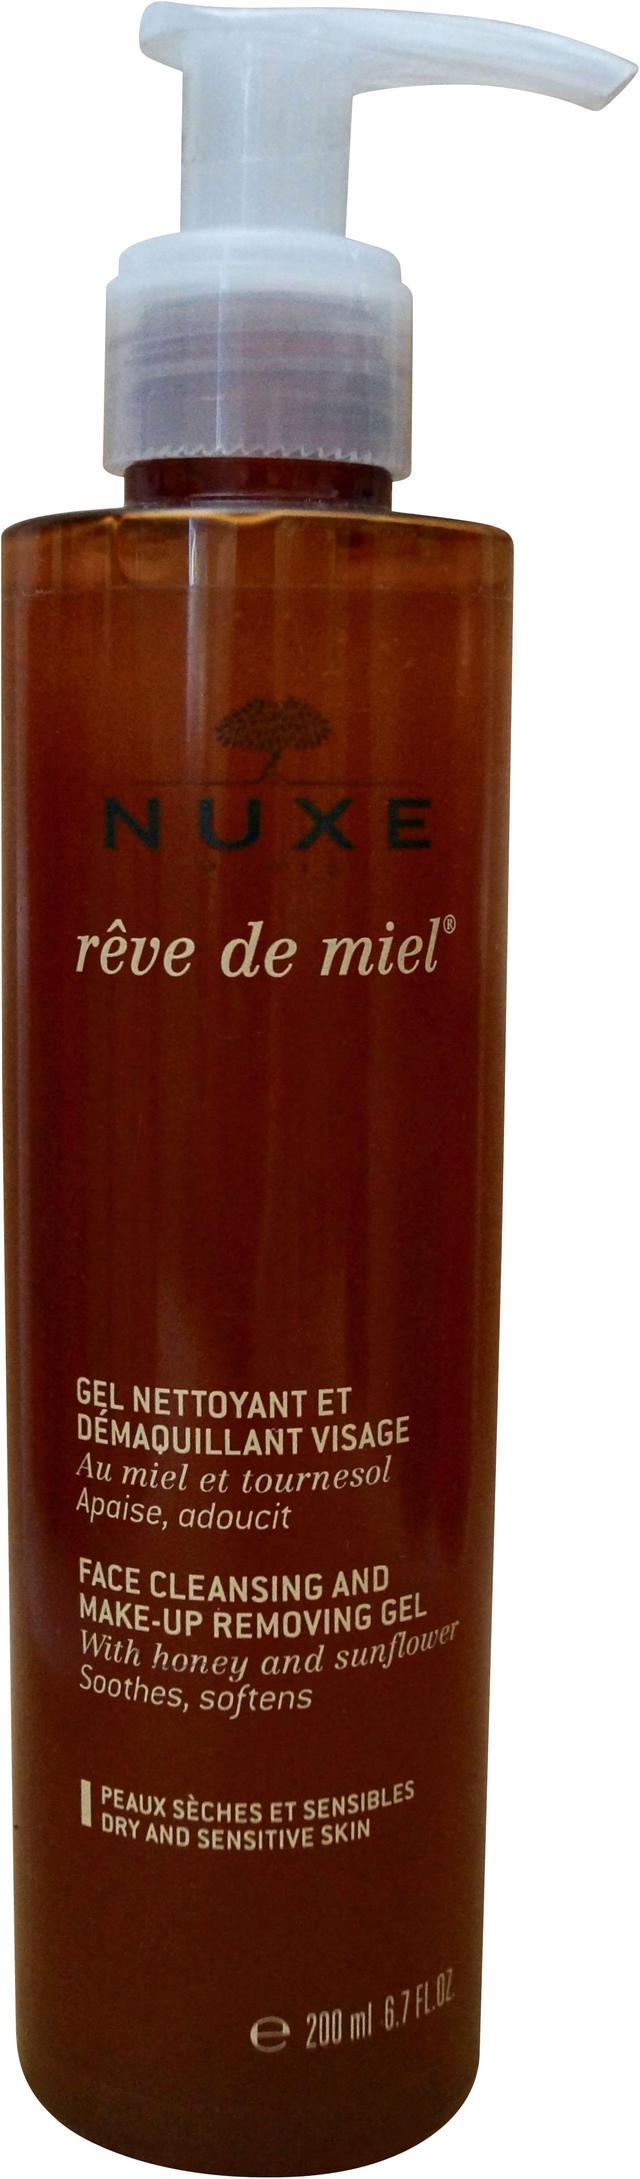 Makeup Reve - Cleansing & 200ml/6.7oz Nuxe Face Removing De Miel